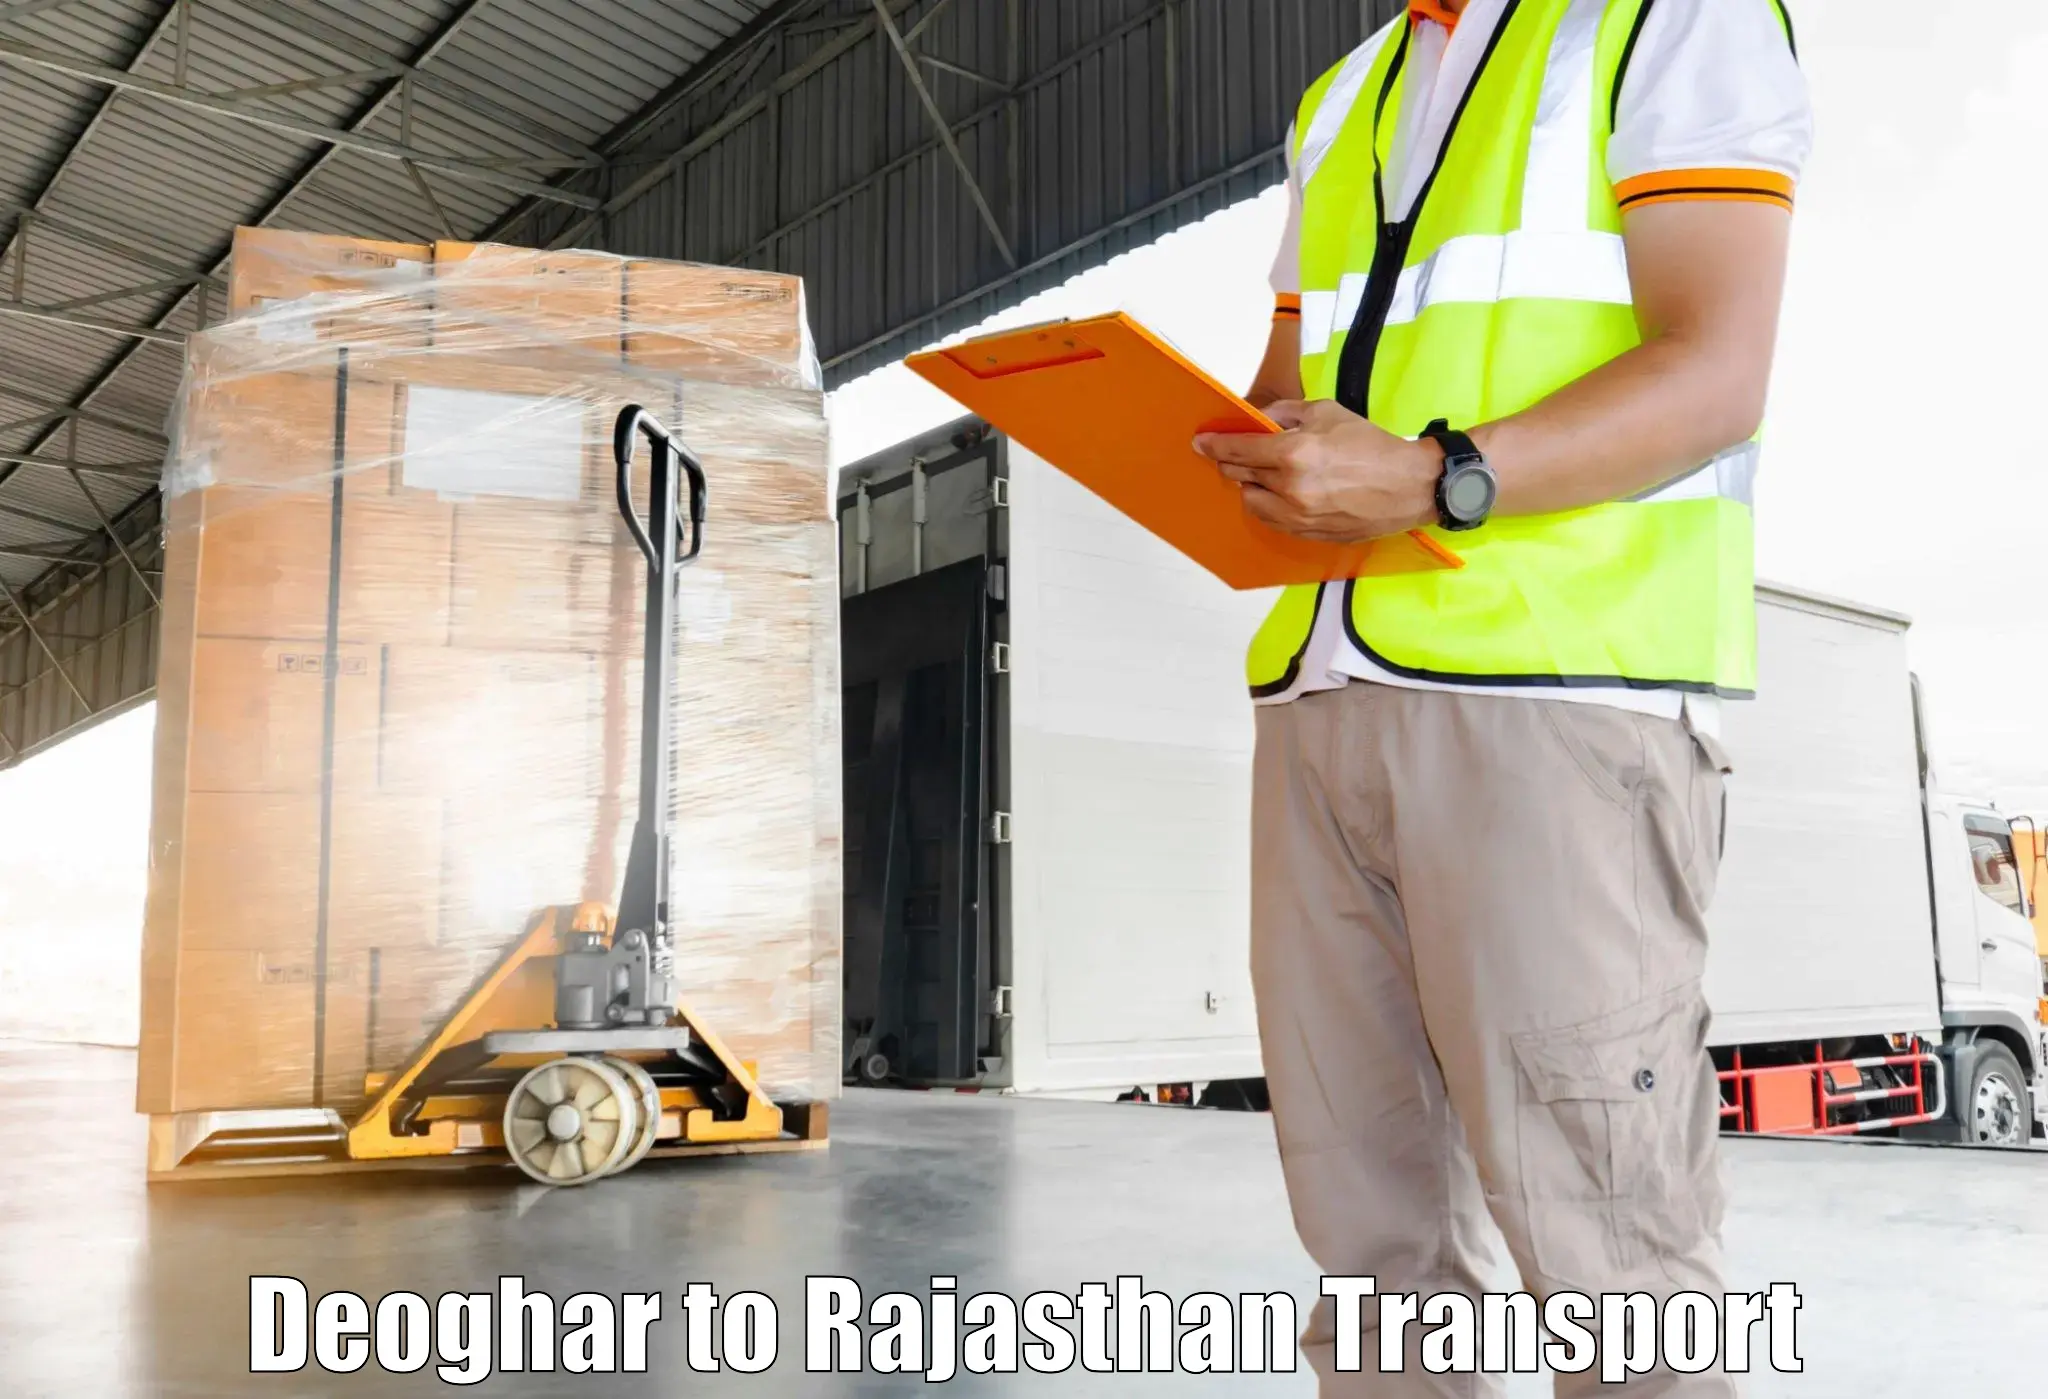 Nearest transport service Deoghar to Viratnagar